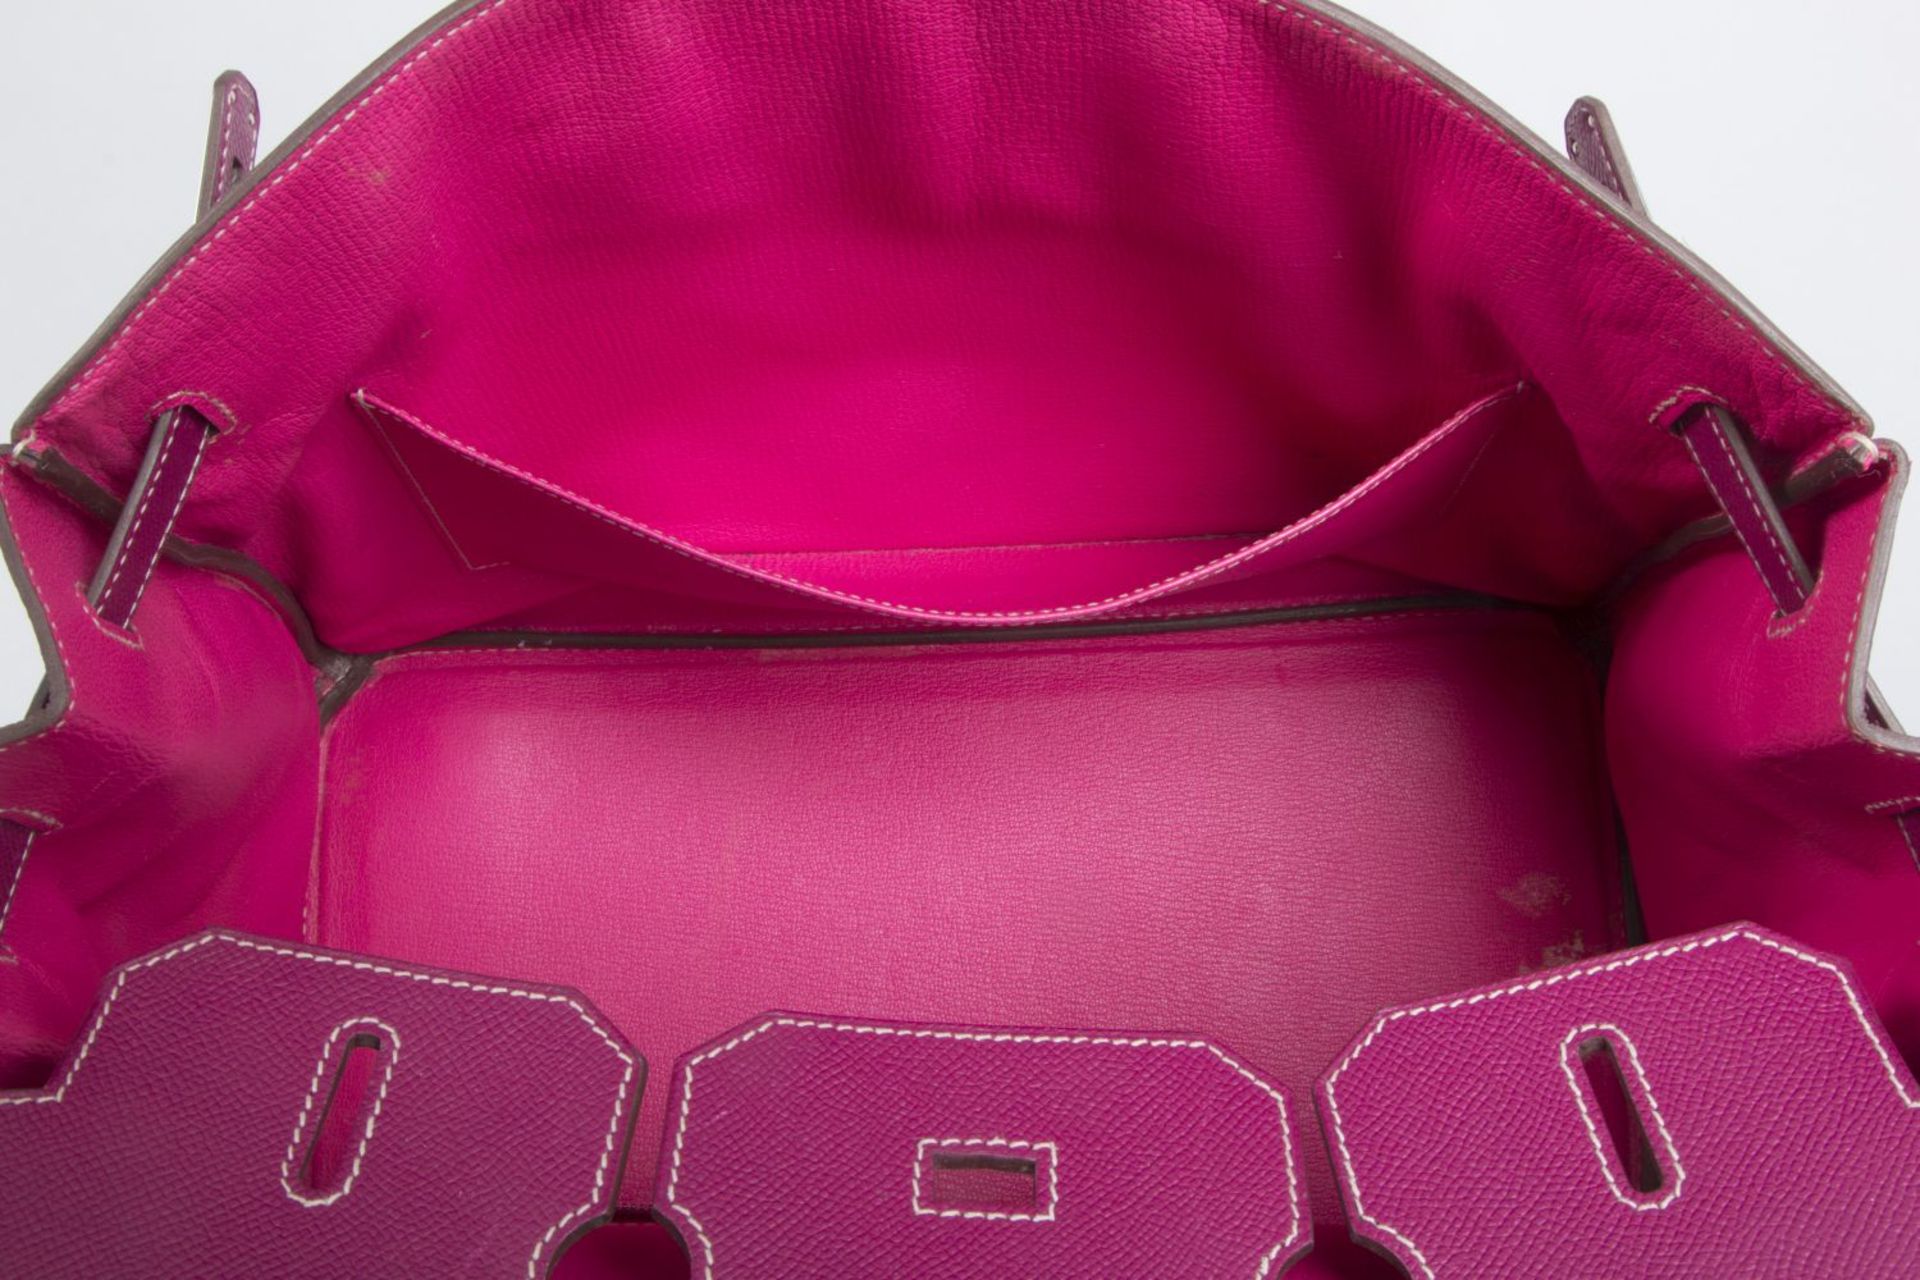 Hermès ''Birkin Bag 35'' Kalbsleder in Fuchsia mit weißer Naht. Beschläge mit Palladiumauflage. Trap - Bild 6 aus 10